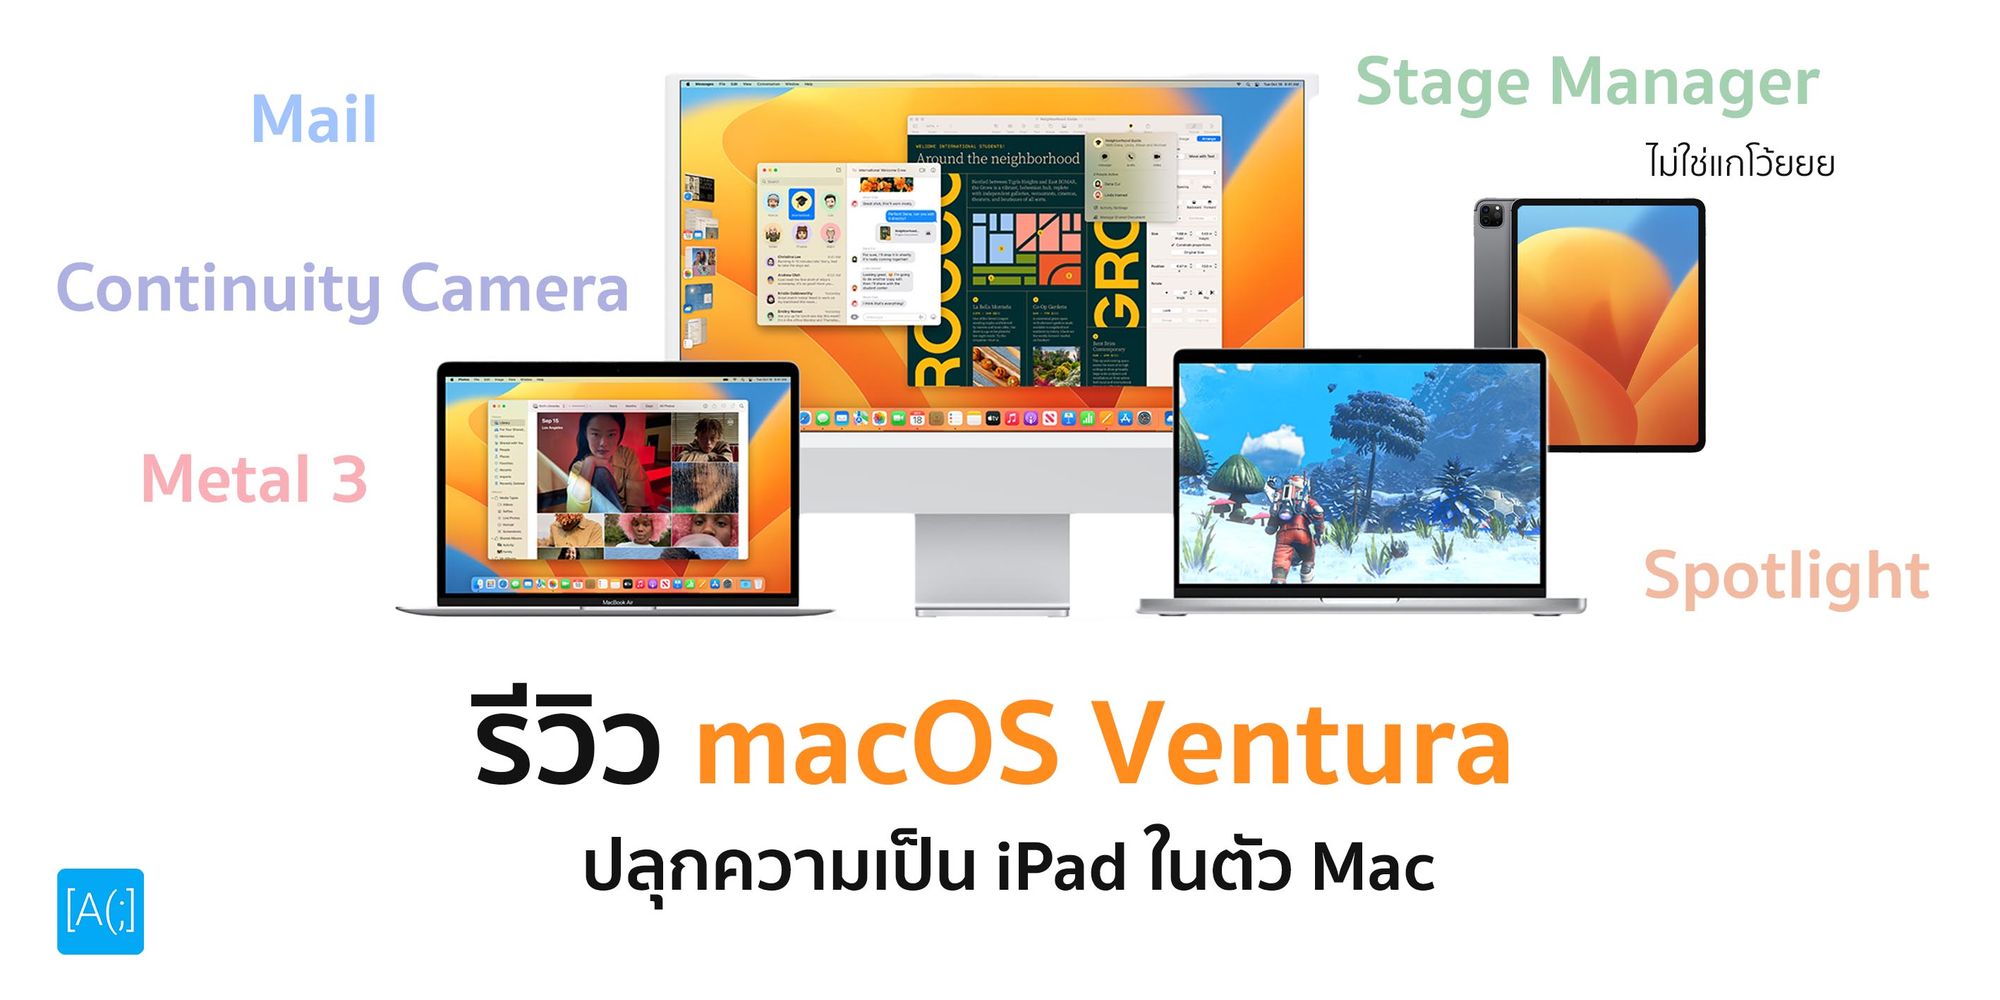 รีวิว macOS Ventura ปลุกความเป็น iPad ในตัว Mac